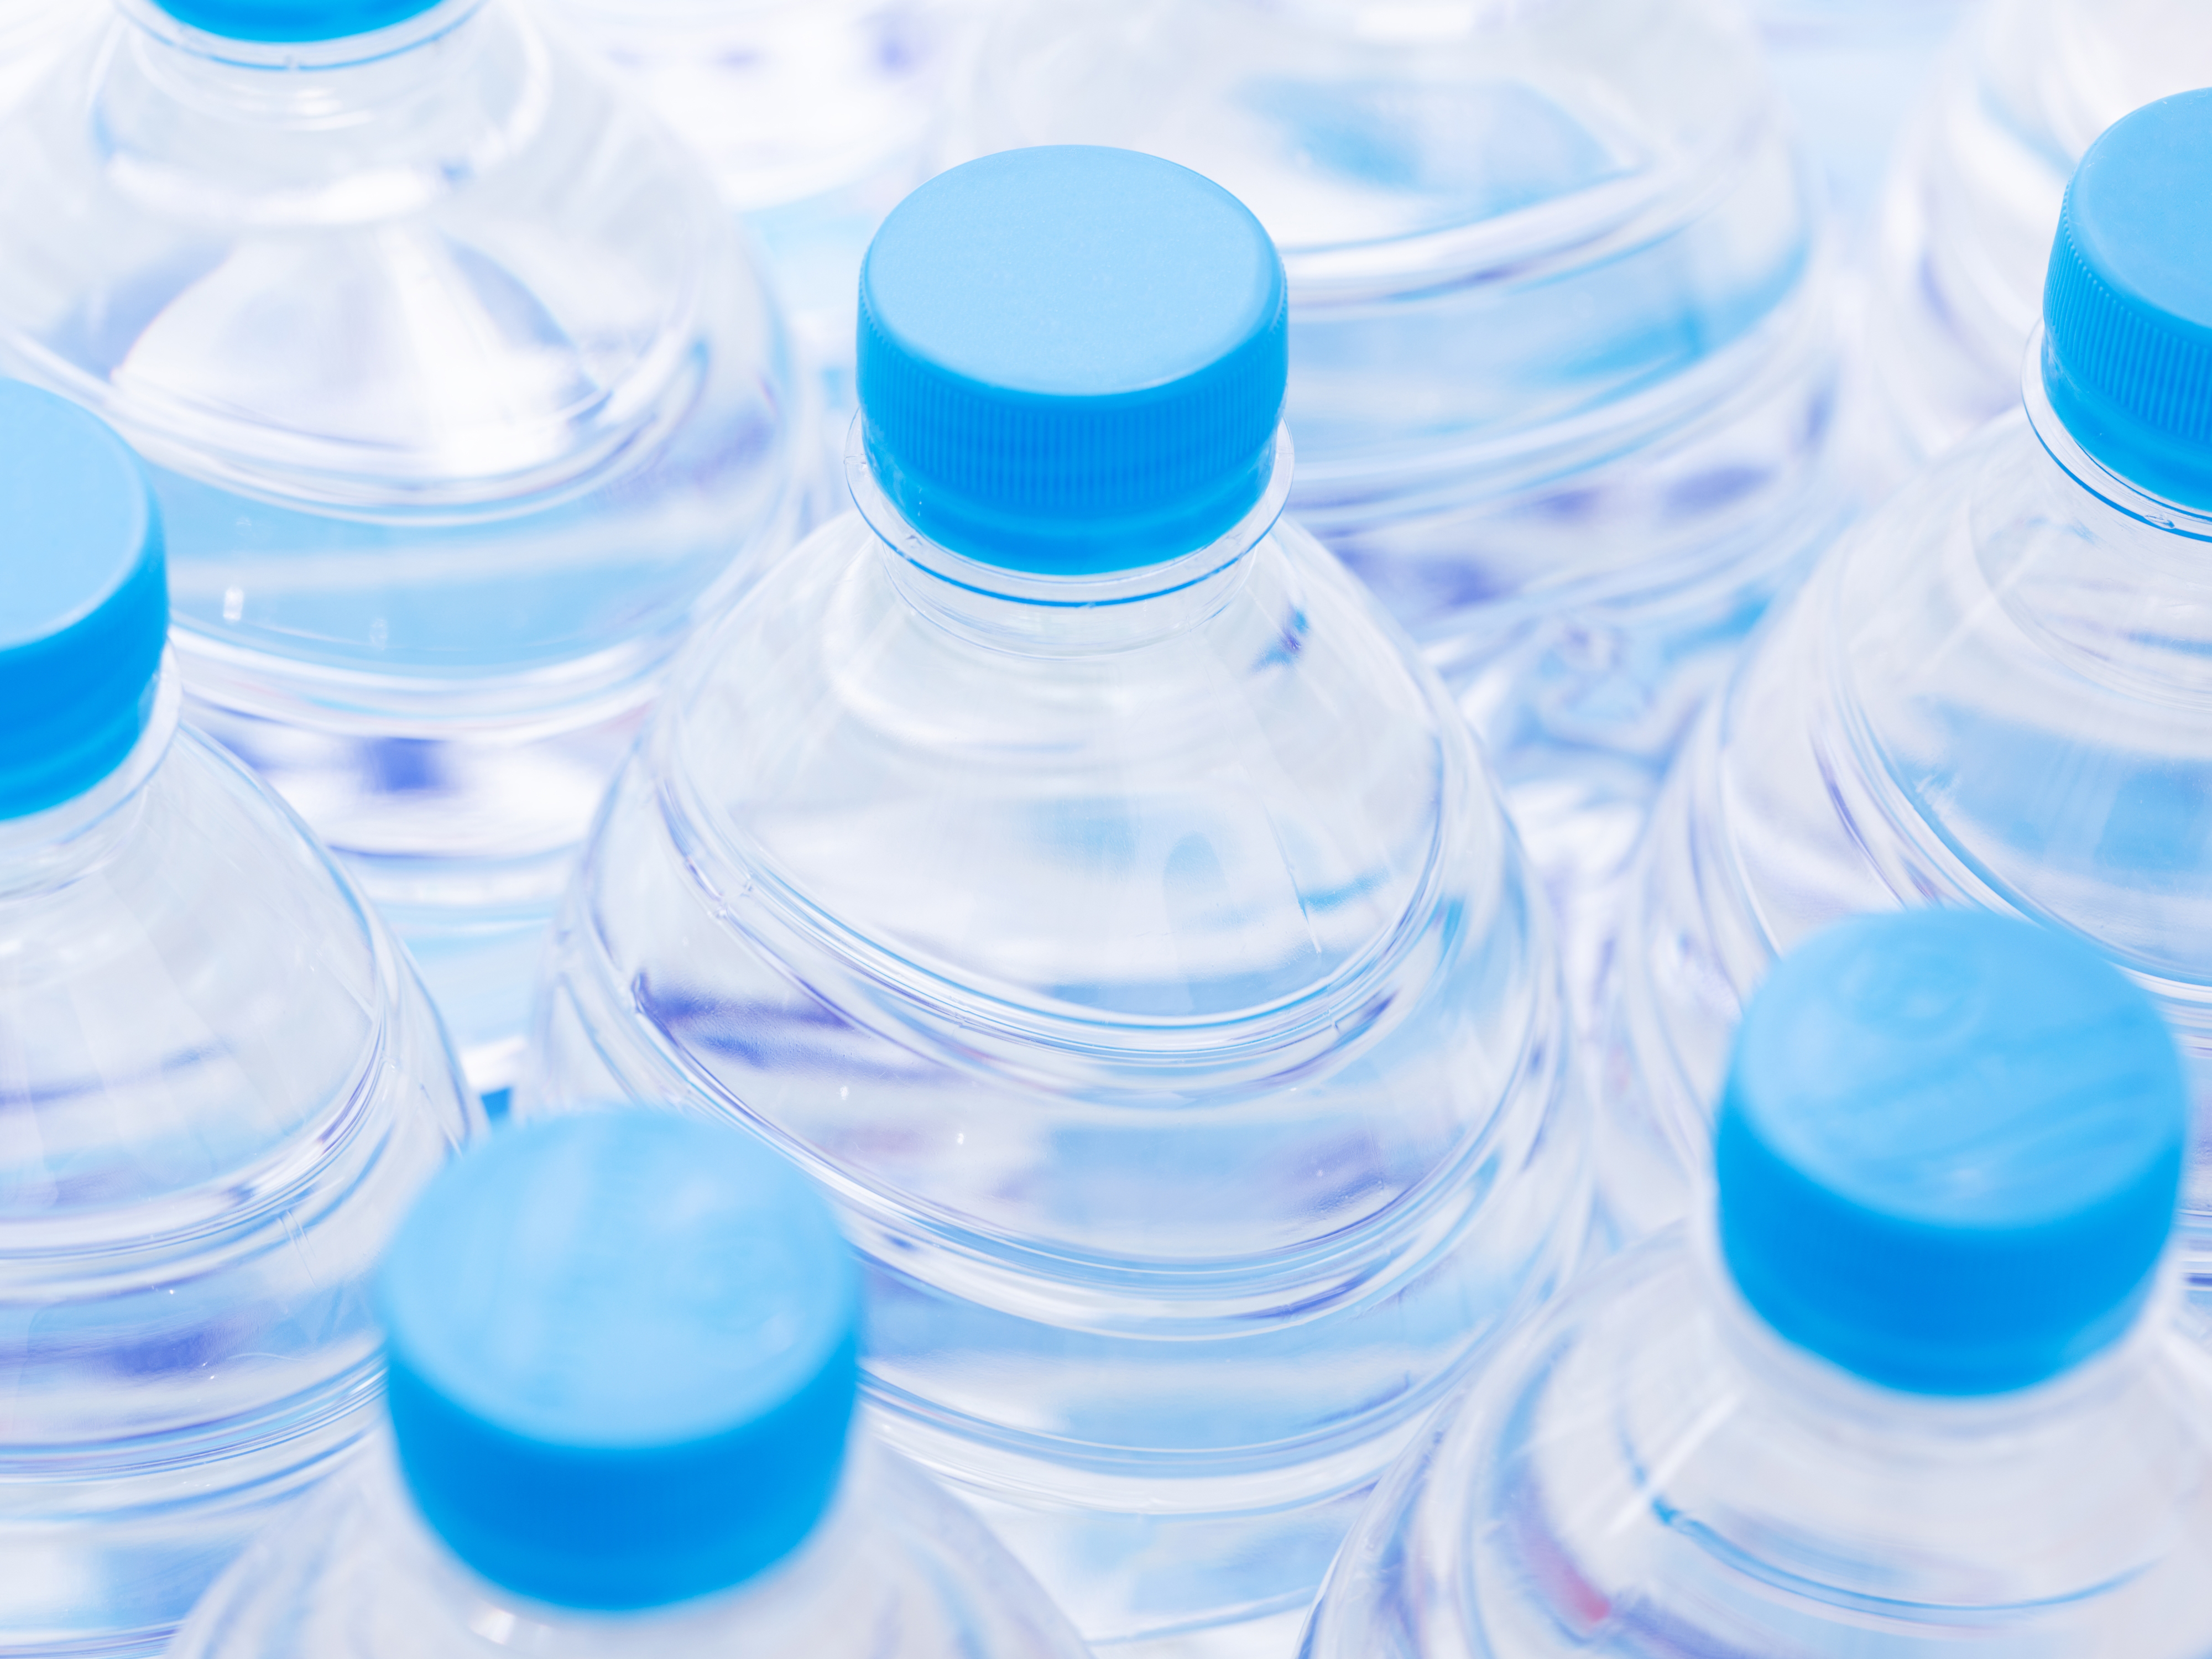 Abbildung von Plastikflaschen